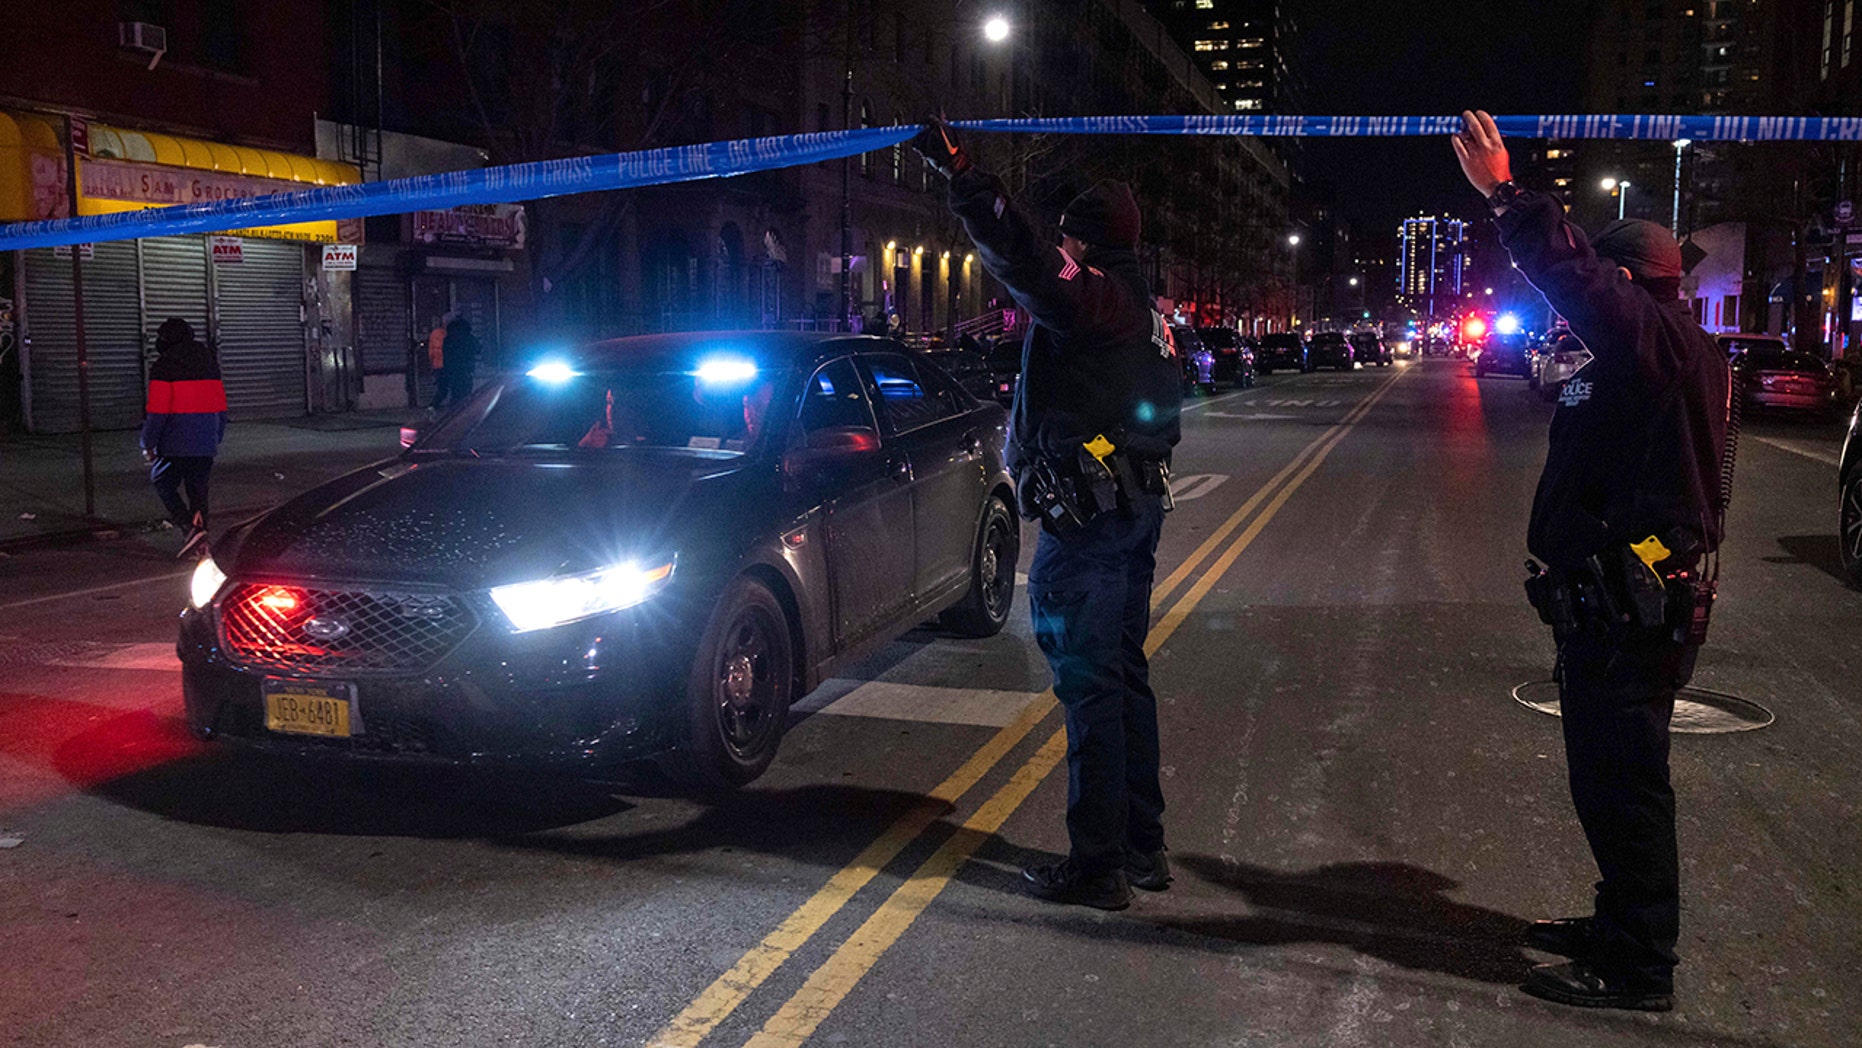 Oficial de NYPD Muerto otro herido en Harlem